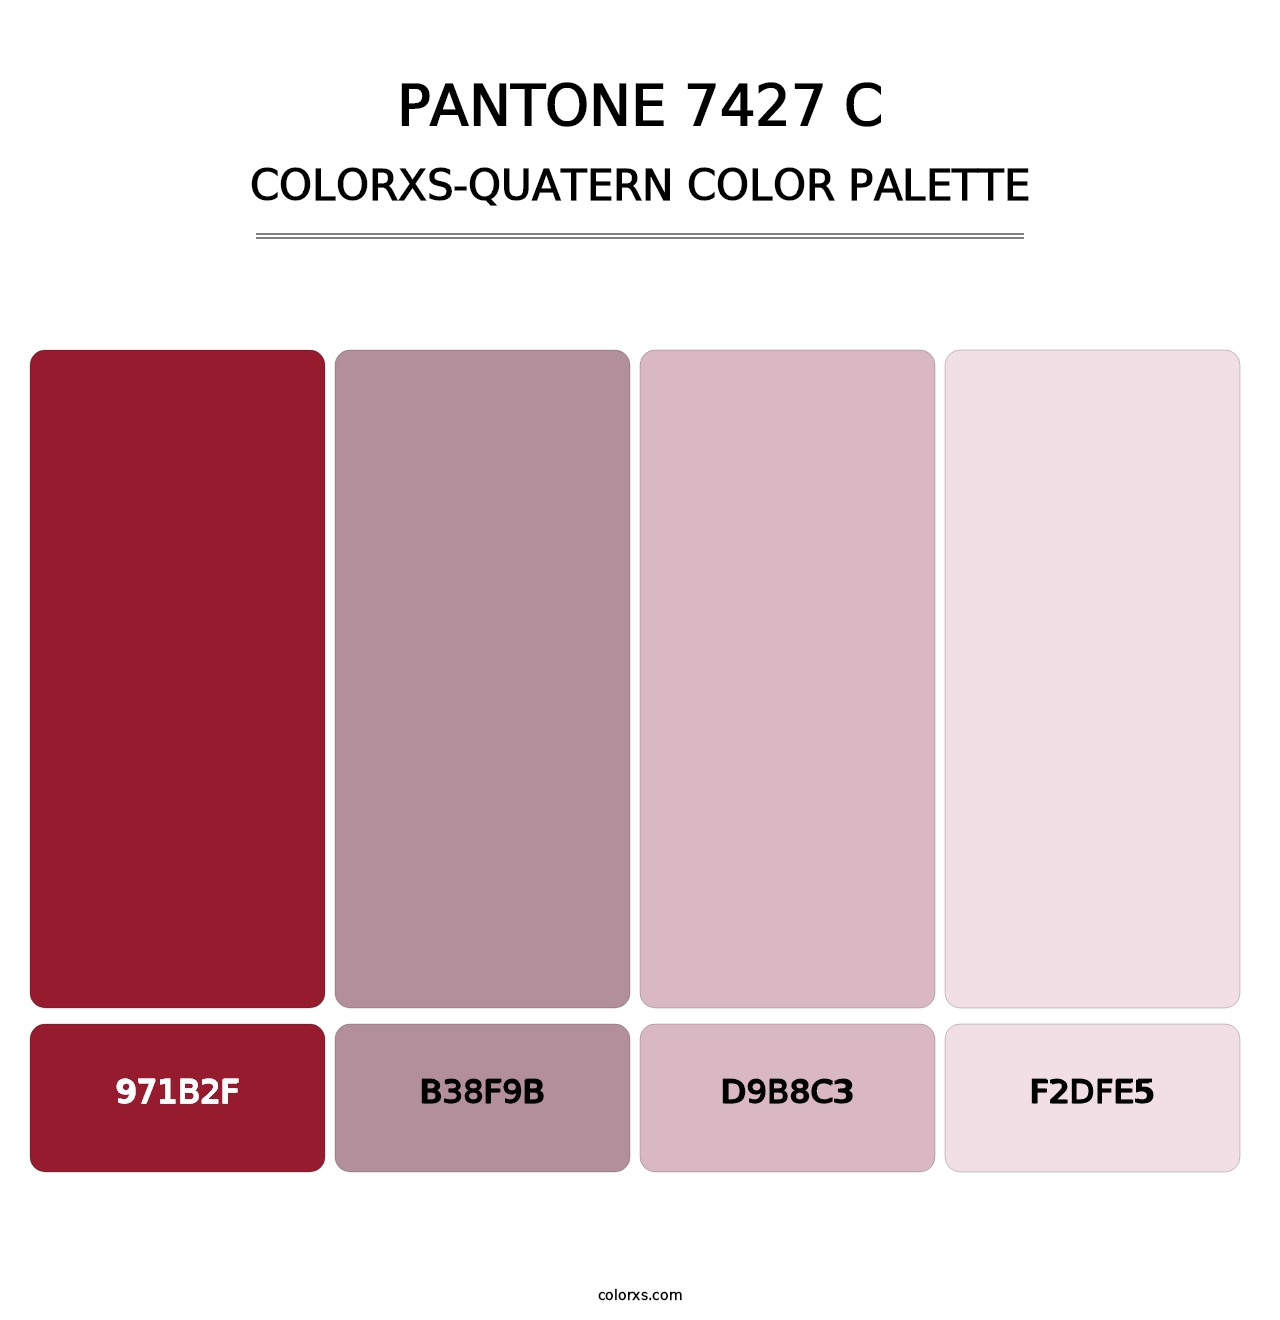 PANTONE 7427 C - Colorxs Quatern Palette